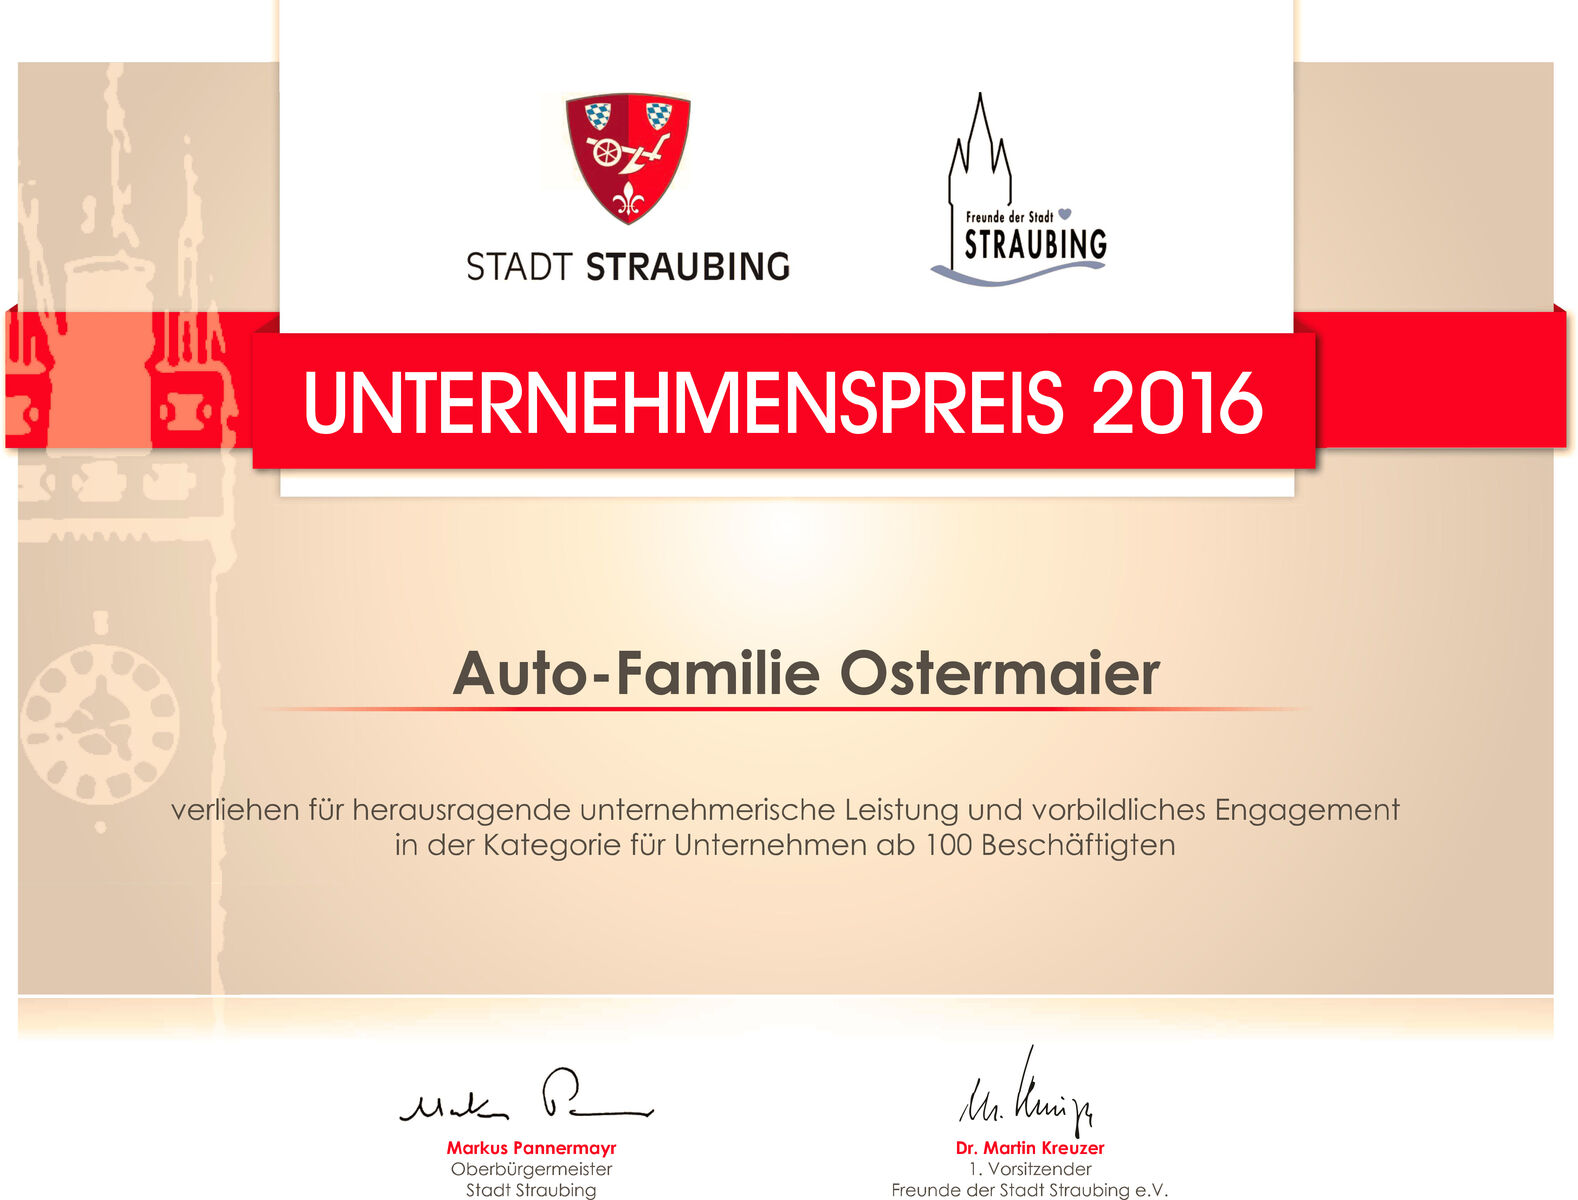 Ostermaier_Urkunde Unternehmenspreis 2016